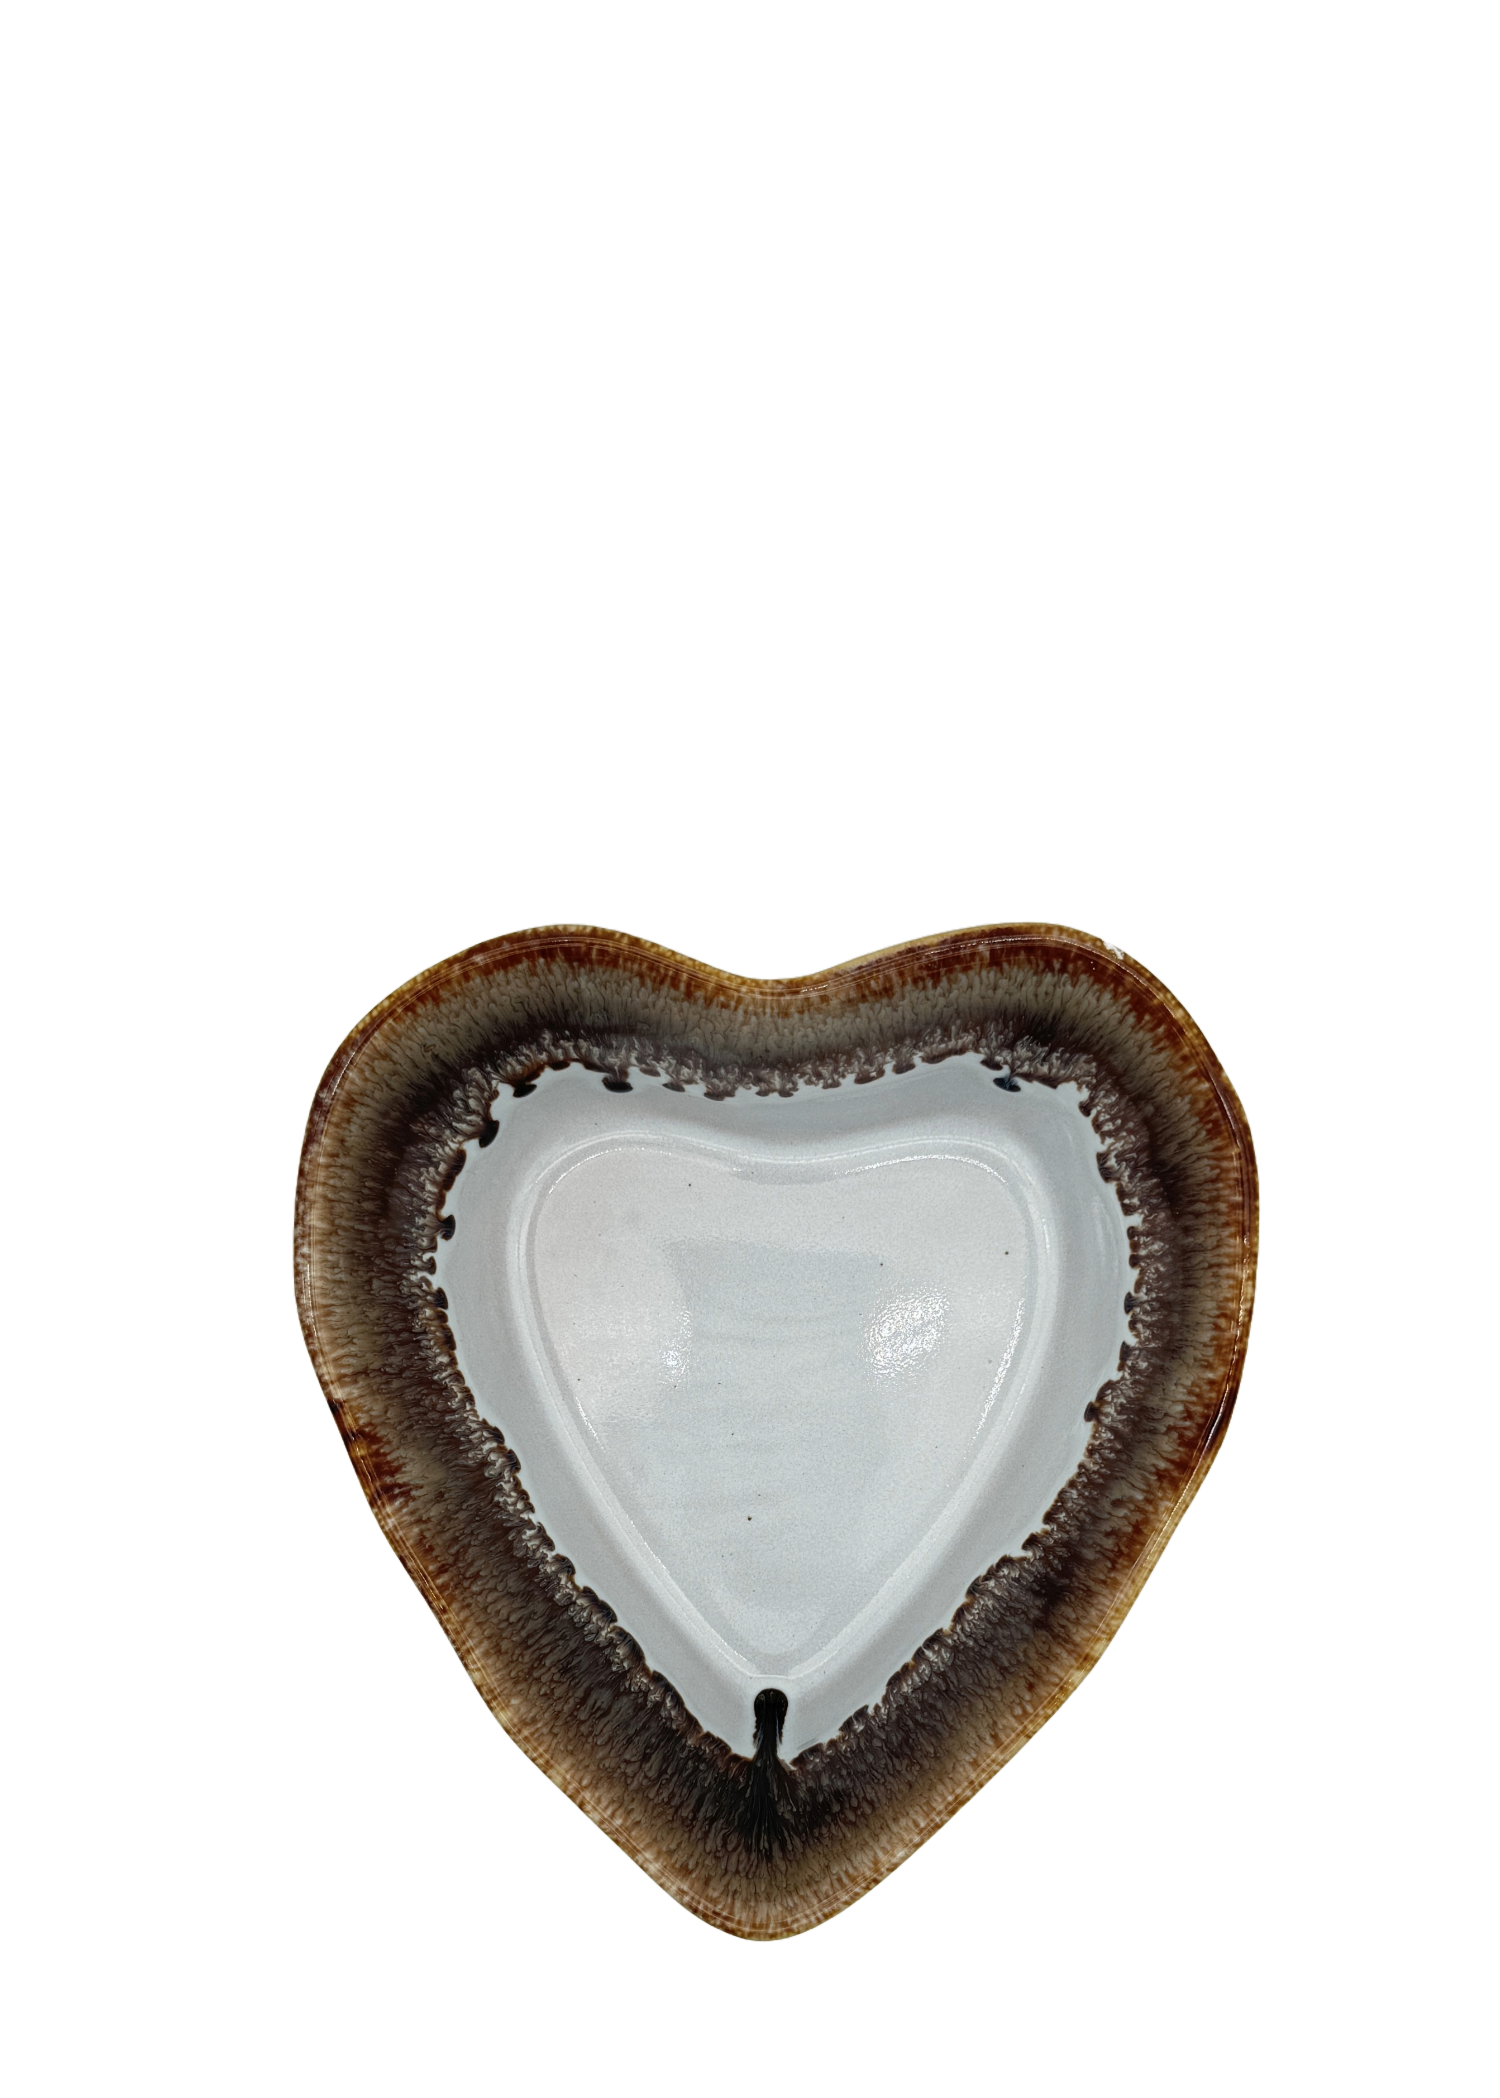 Herzschüssel kleine Liebe - heisse Schokolade mit Herznudeln und Pesto Rosso